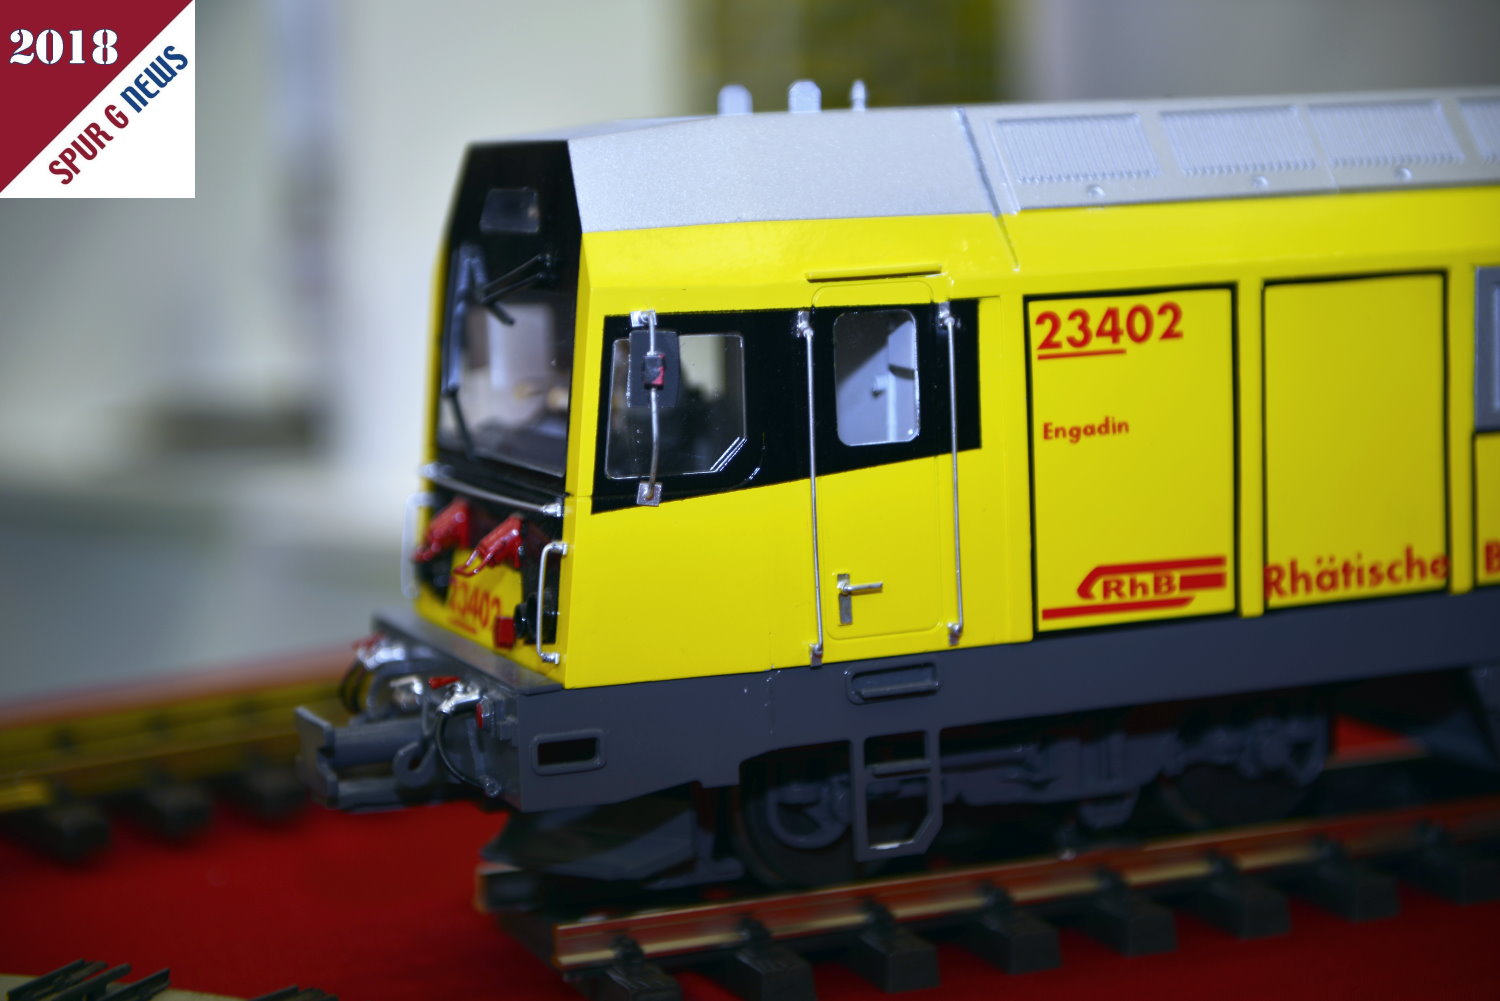 Ein Modell der RhB Lok Gmf-II - Nr. 23402 wird als Neuheit 2018 bei Dietz angeboten. Die Diesellokomotive wird mit DCC-Decoder, DIETZ-Profisound, gepulstem Verdampfer und ferngesteuertem Entkuppler gefertigt. Produktion erfolgt nur ein ausreichender Nachfrage.